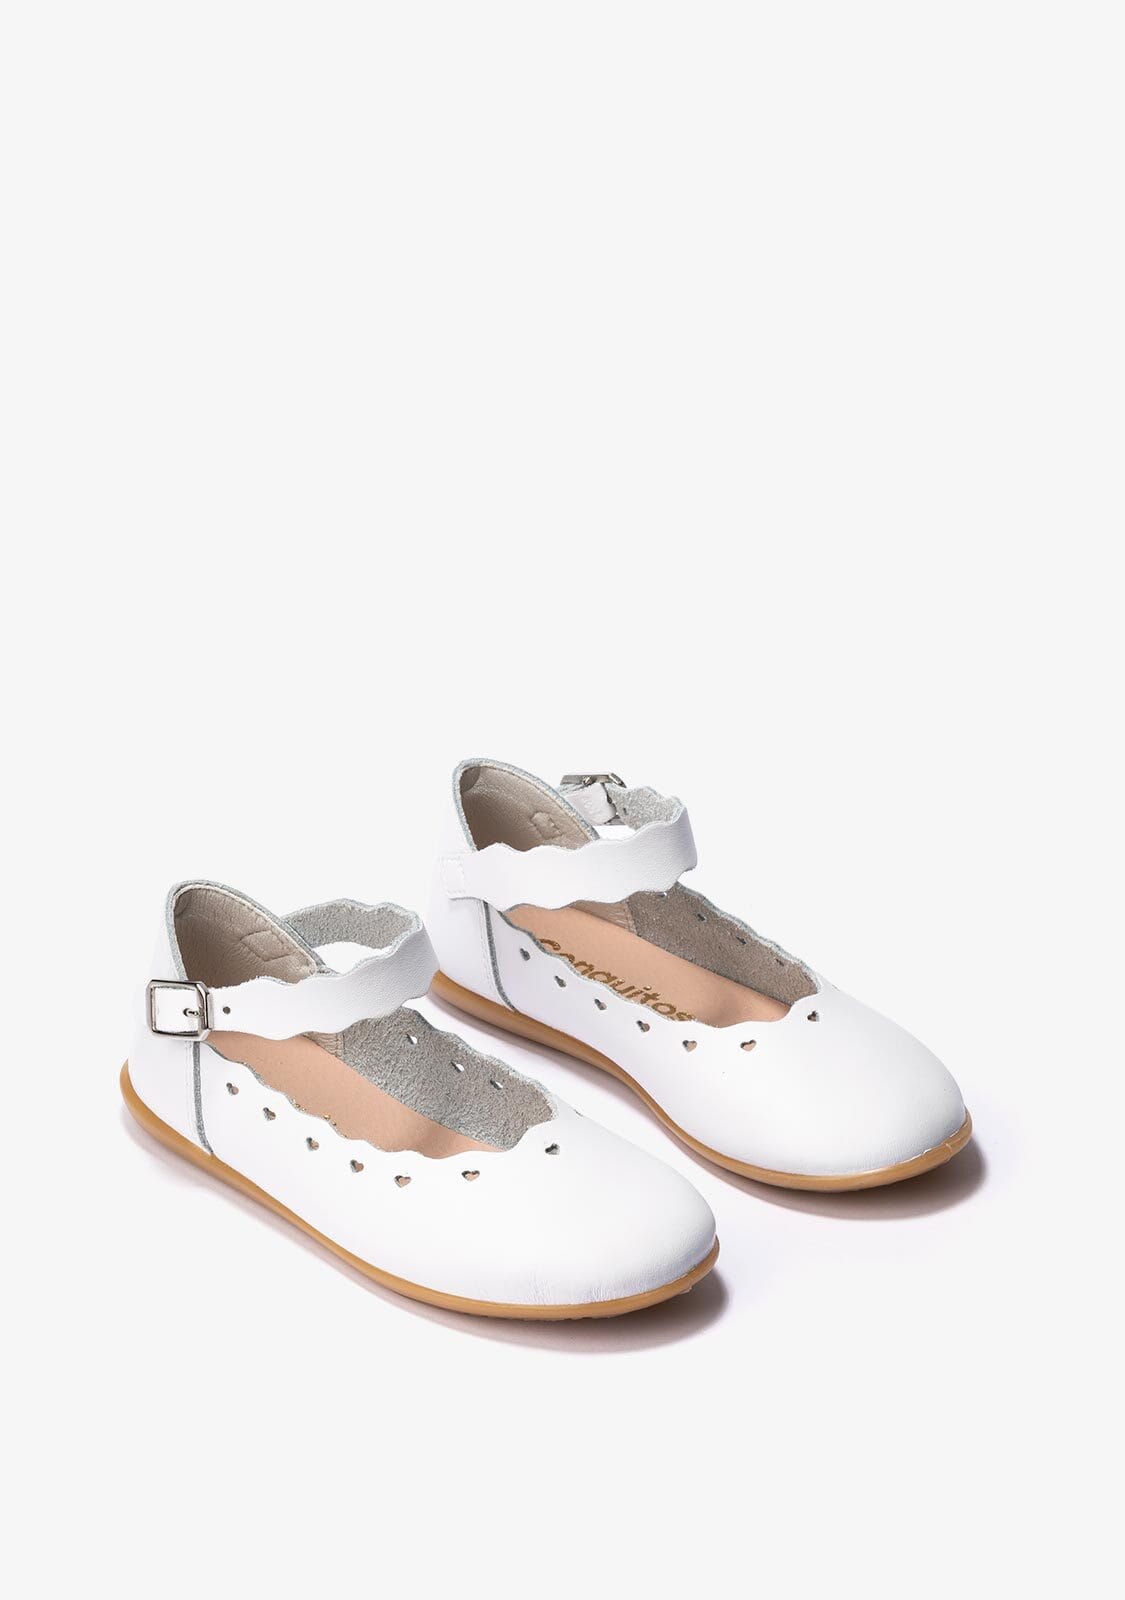 CONGUITOS Shoes Girl's White Buckle Ballerinas